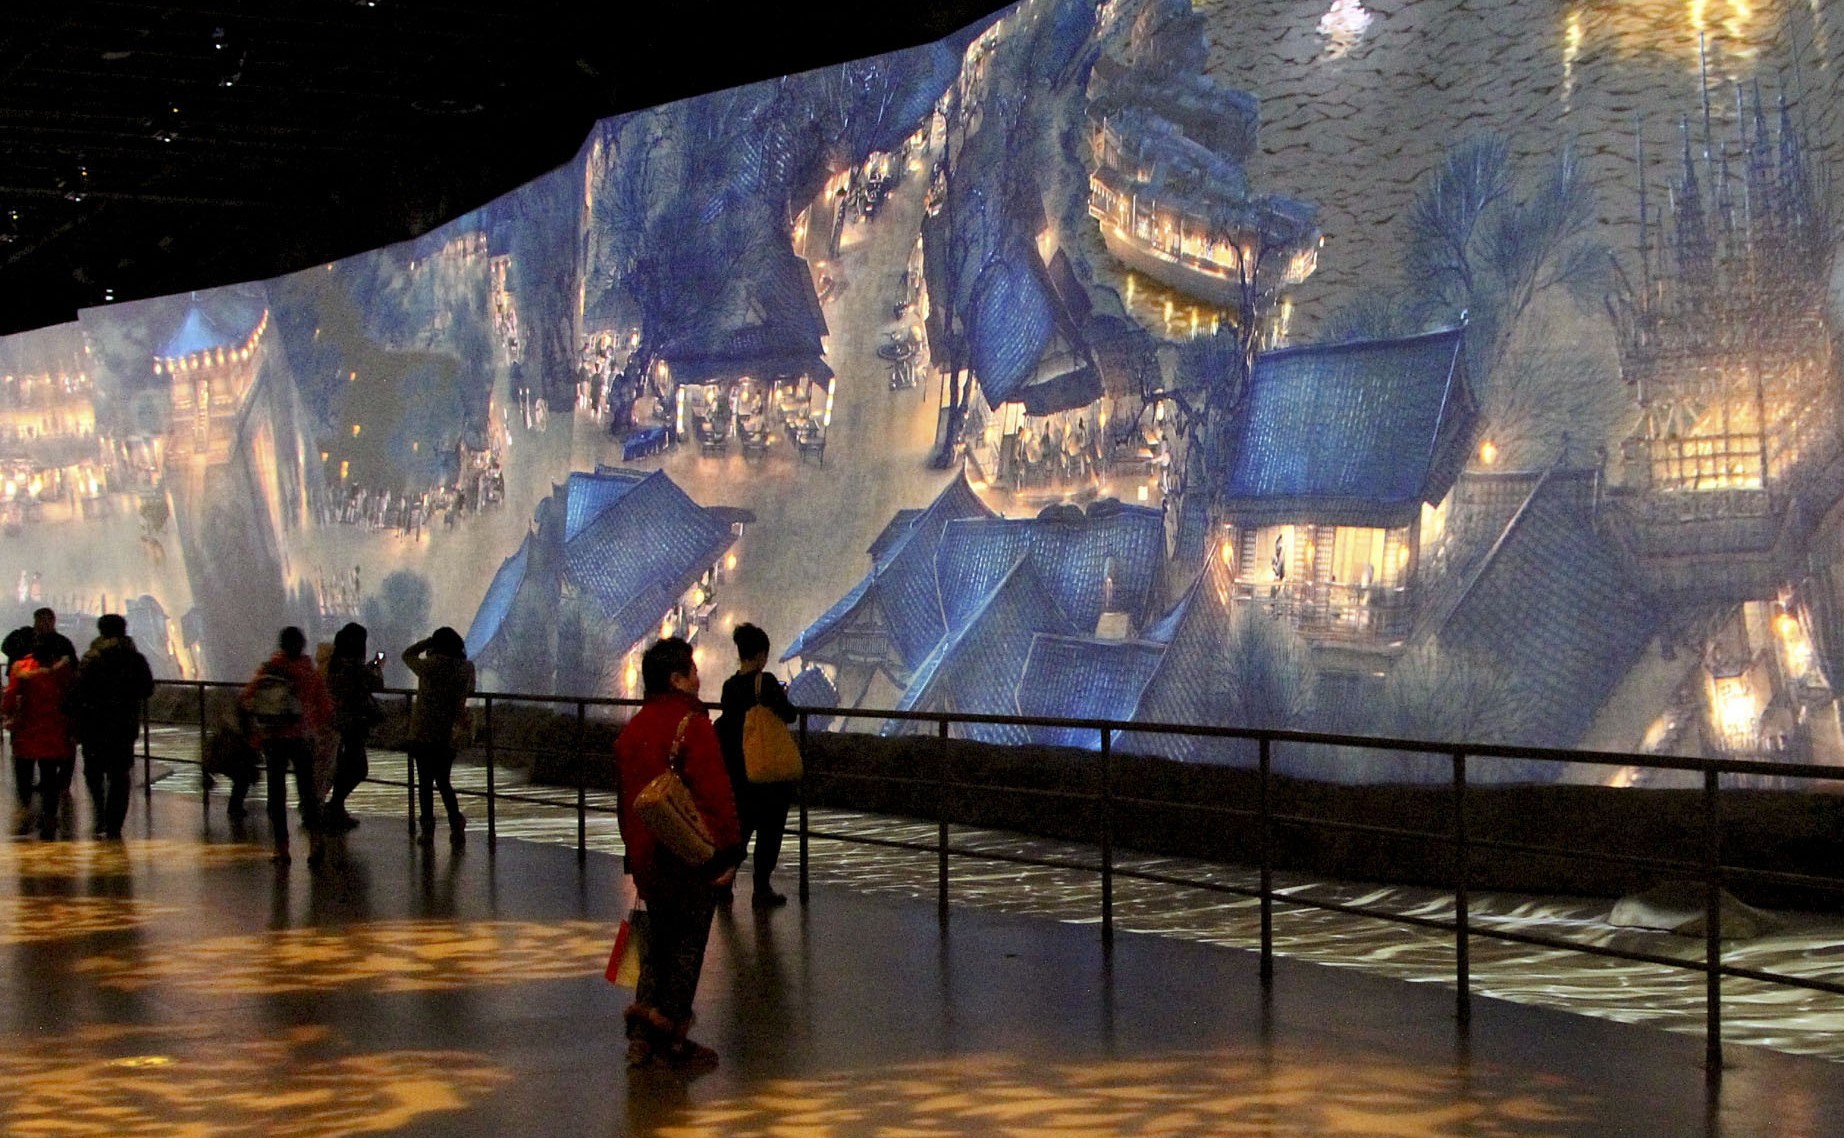 图片展示了几位观众在参观一幅巨大的中国风景画，画面描绘了古典建筑和山水，环境昏暗，以突出画作细节。